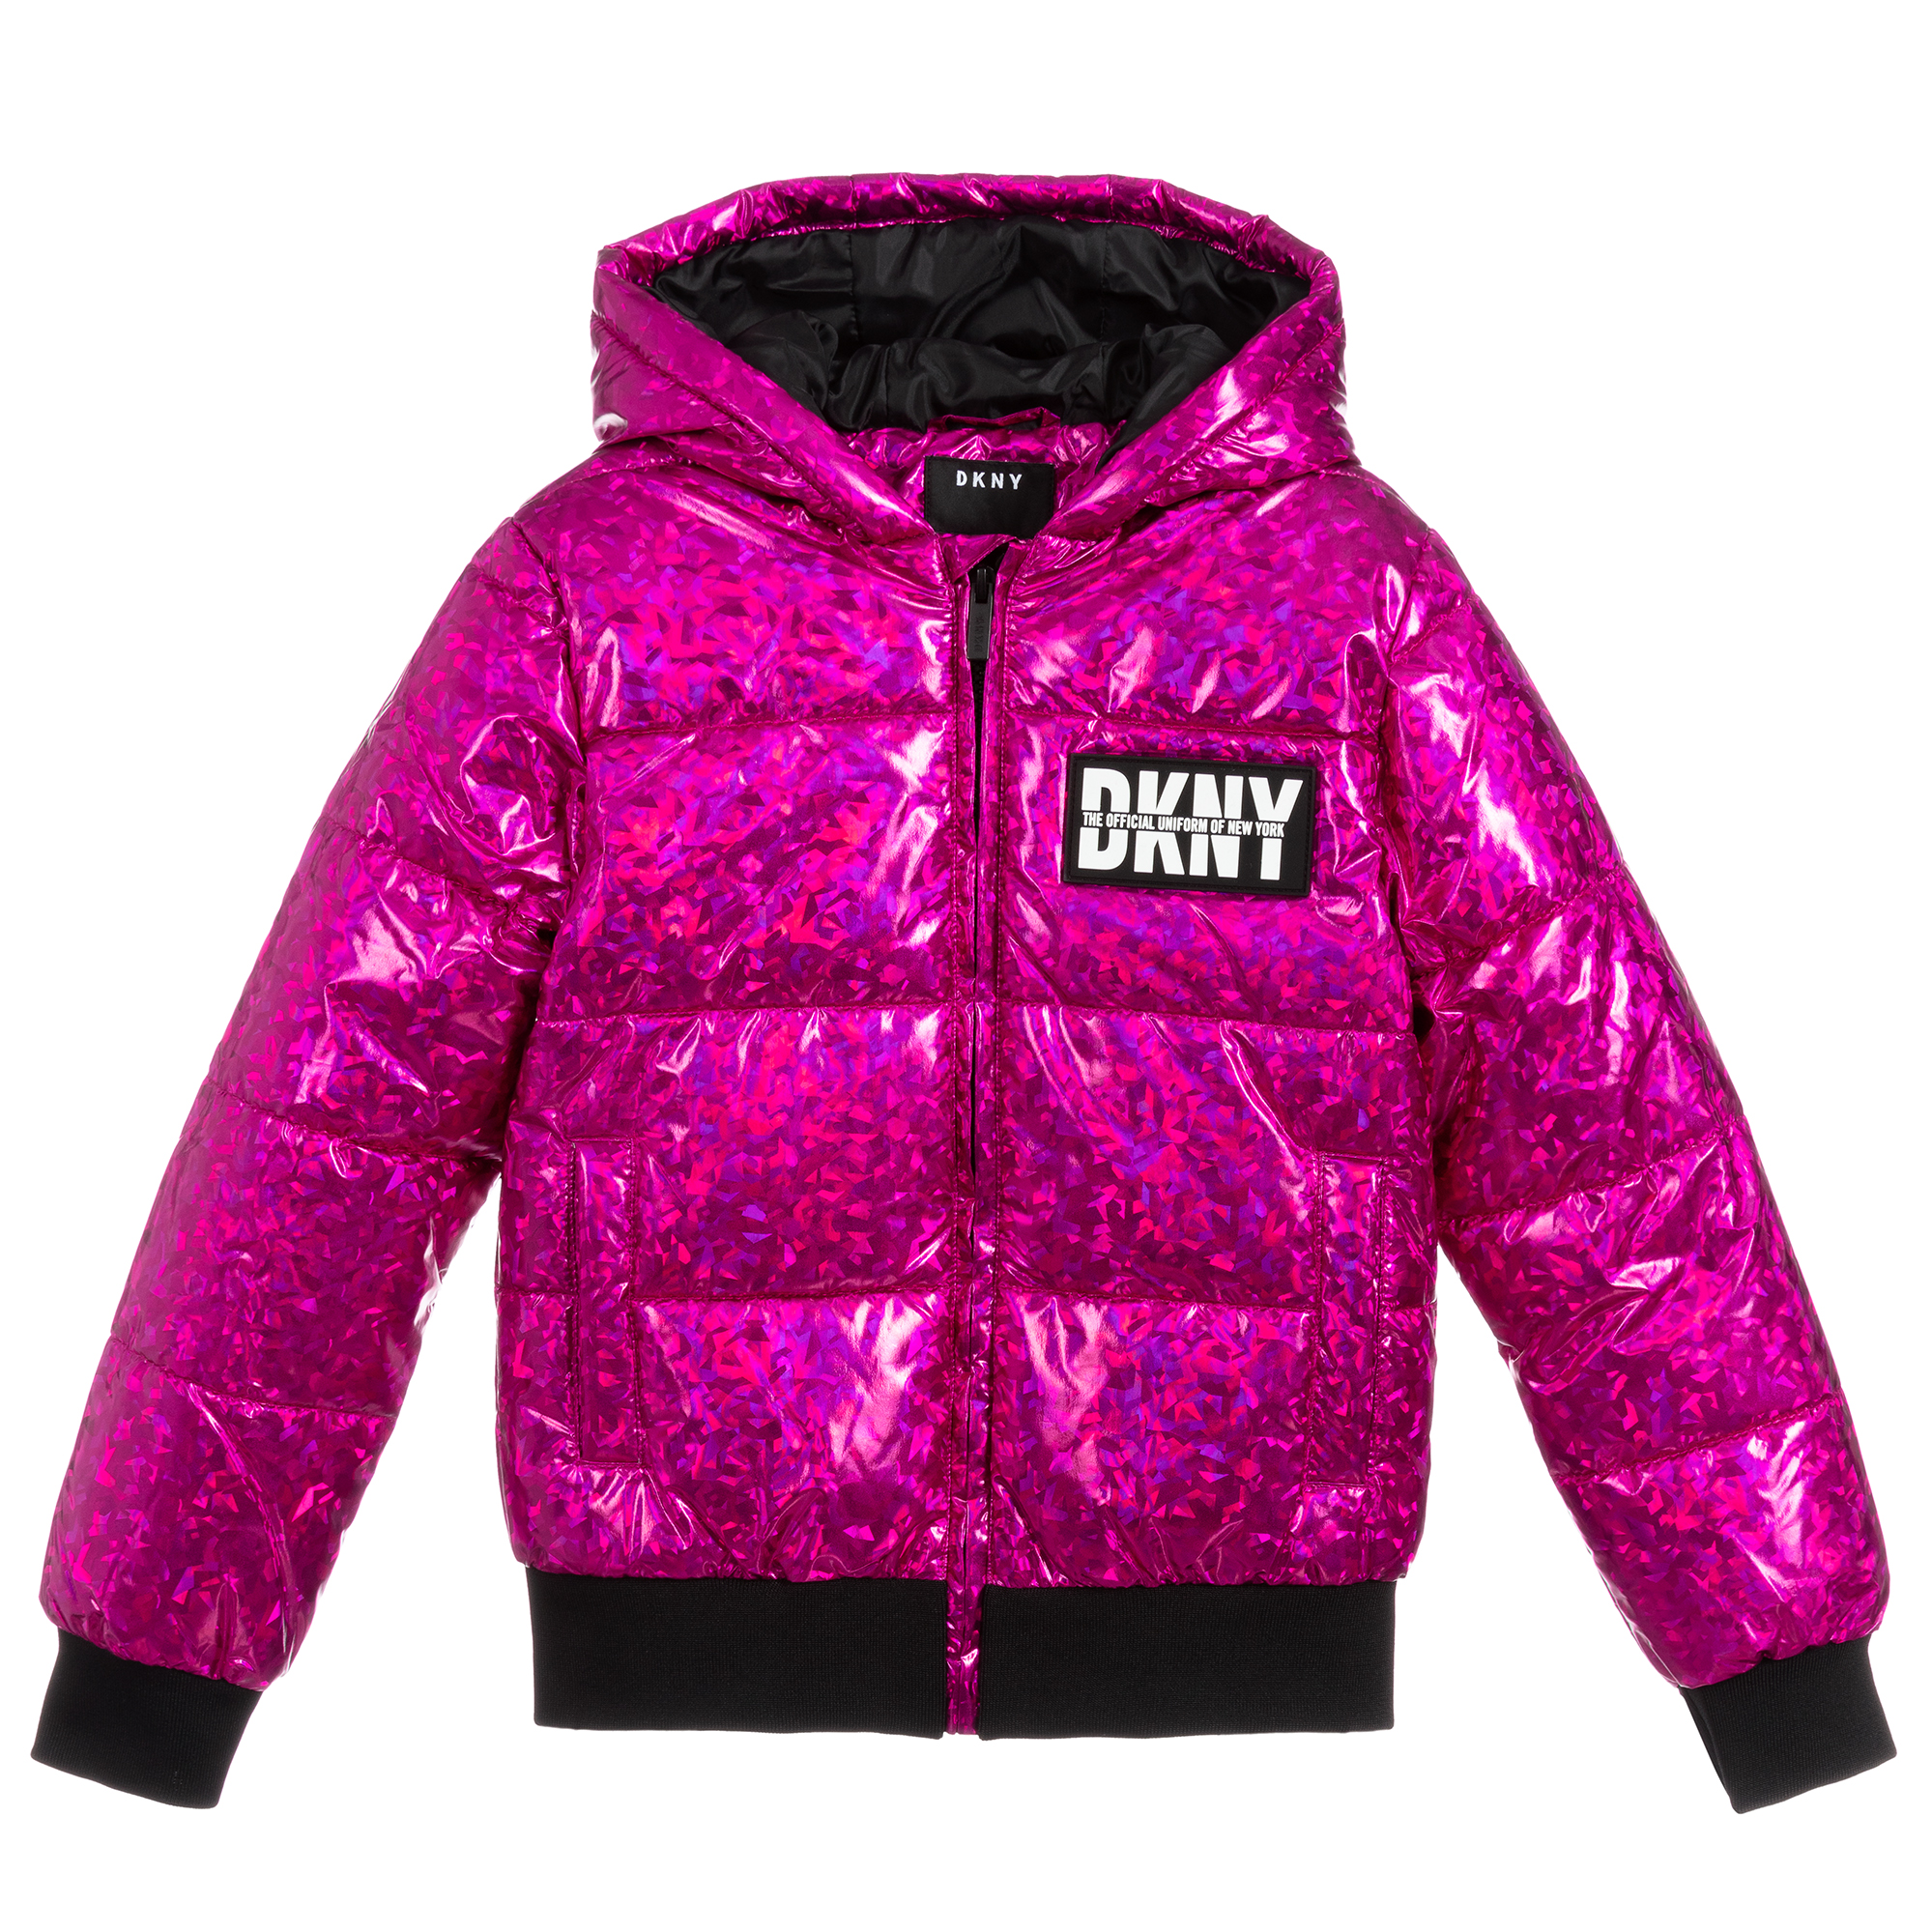 Купить куртку для девочки подростка. Паффер джэкет. Logo Puffer Coat DKNY. Валберис куртки для девочек подростков. Куртка Hanna Puffer Jacket.